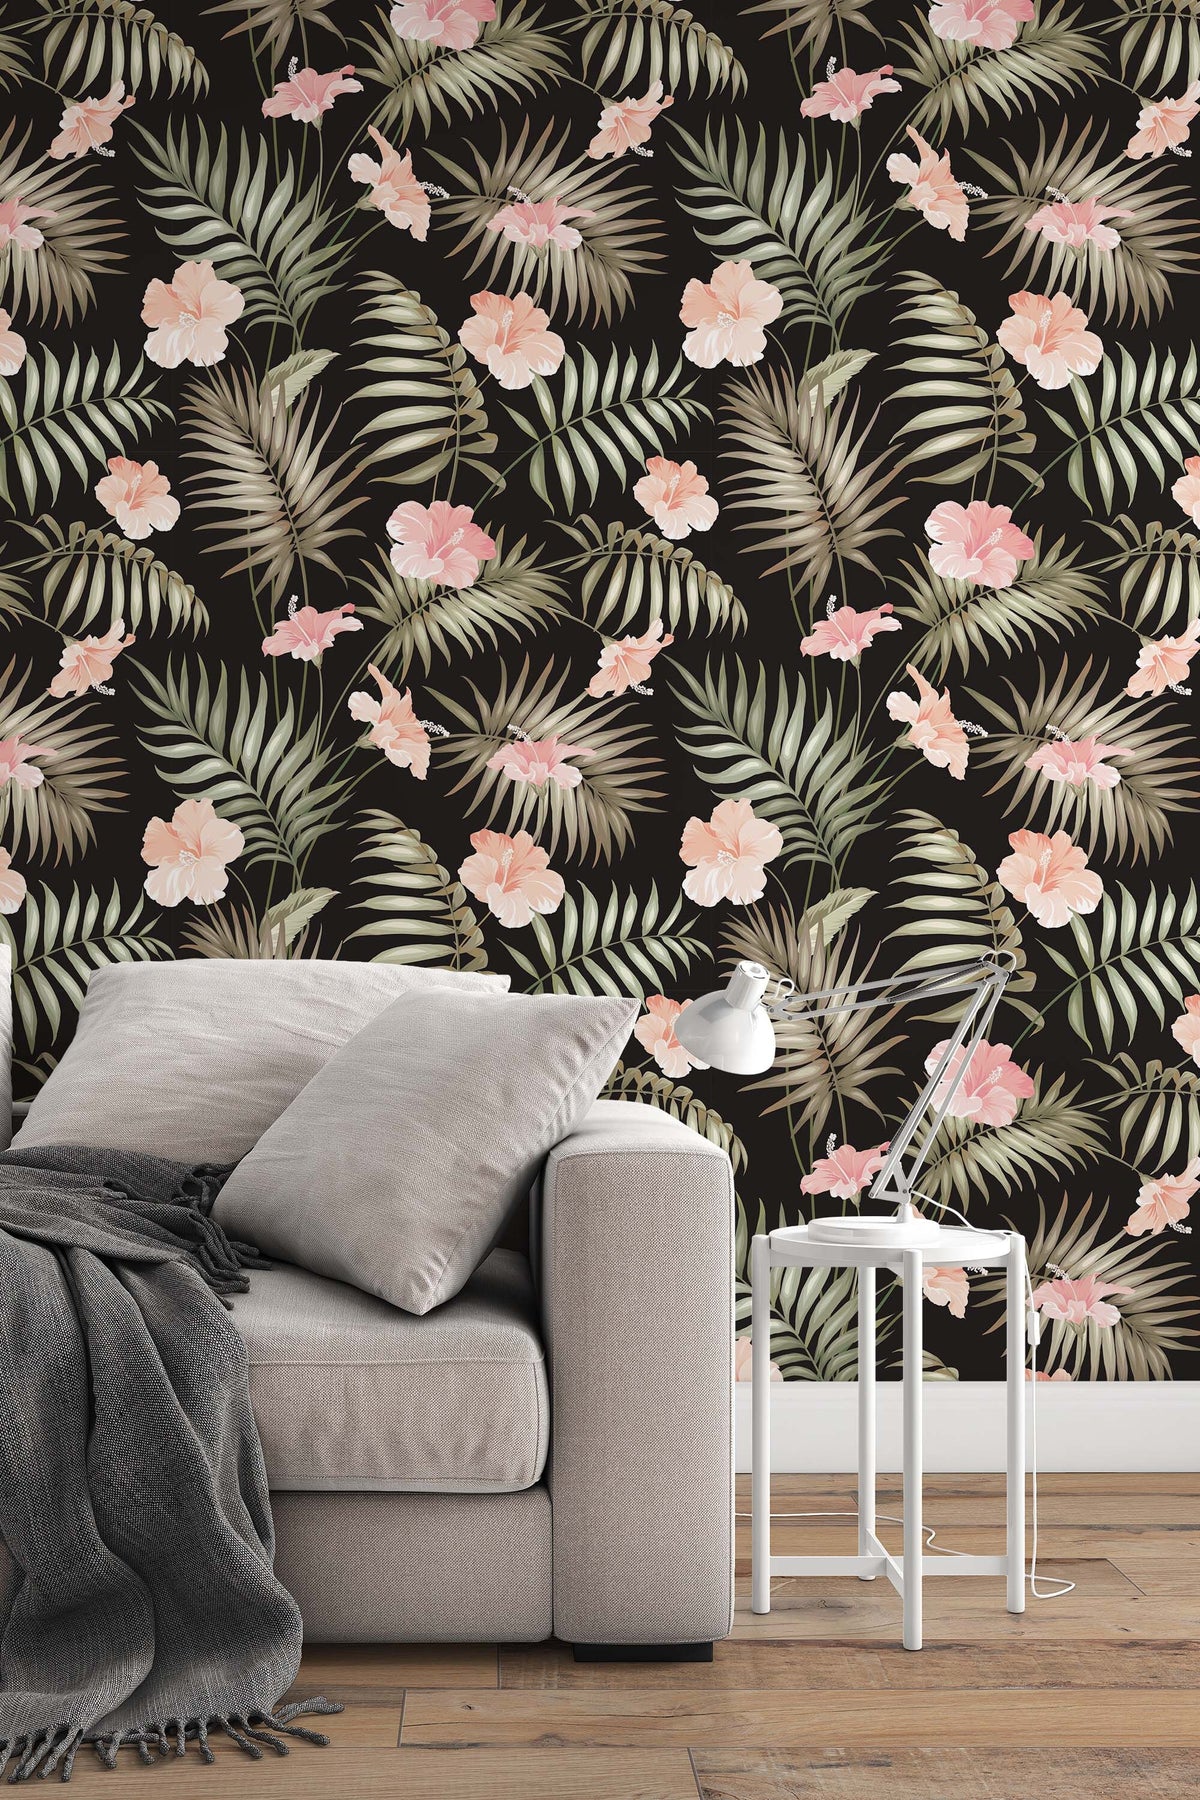 46+] Bing Tropical Wallpaper - WallpaperSafari